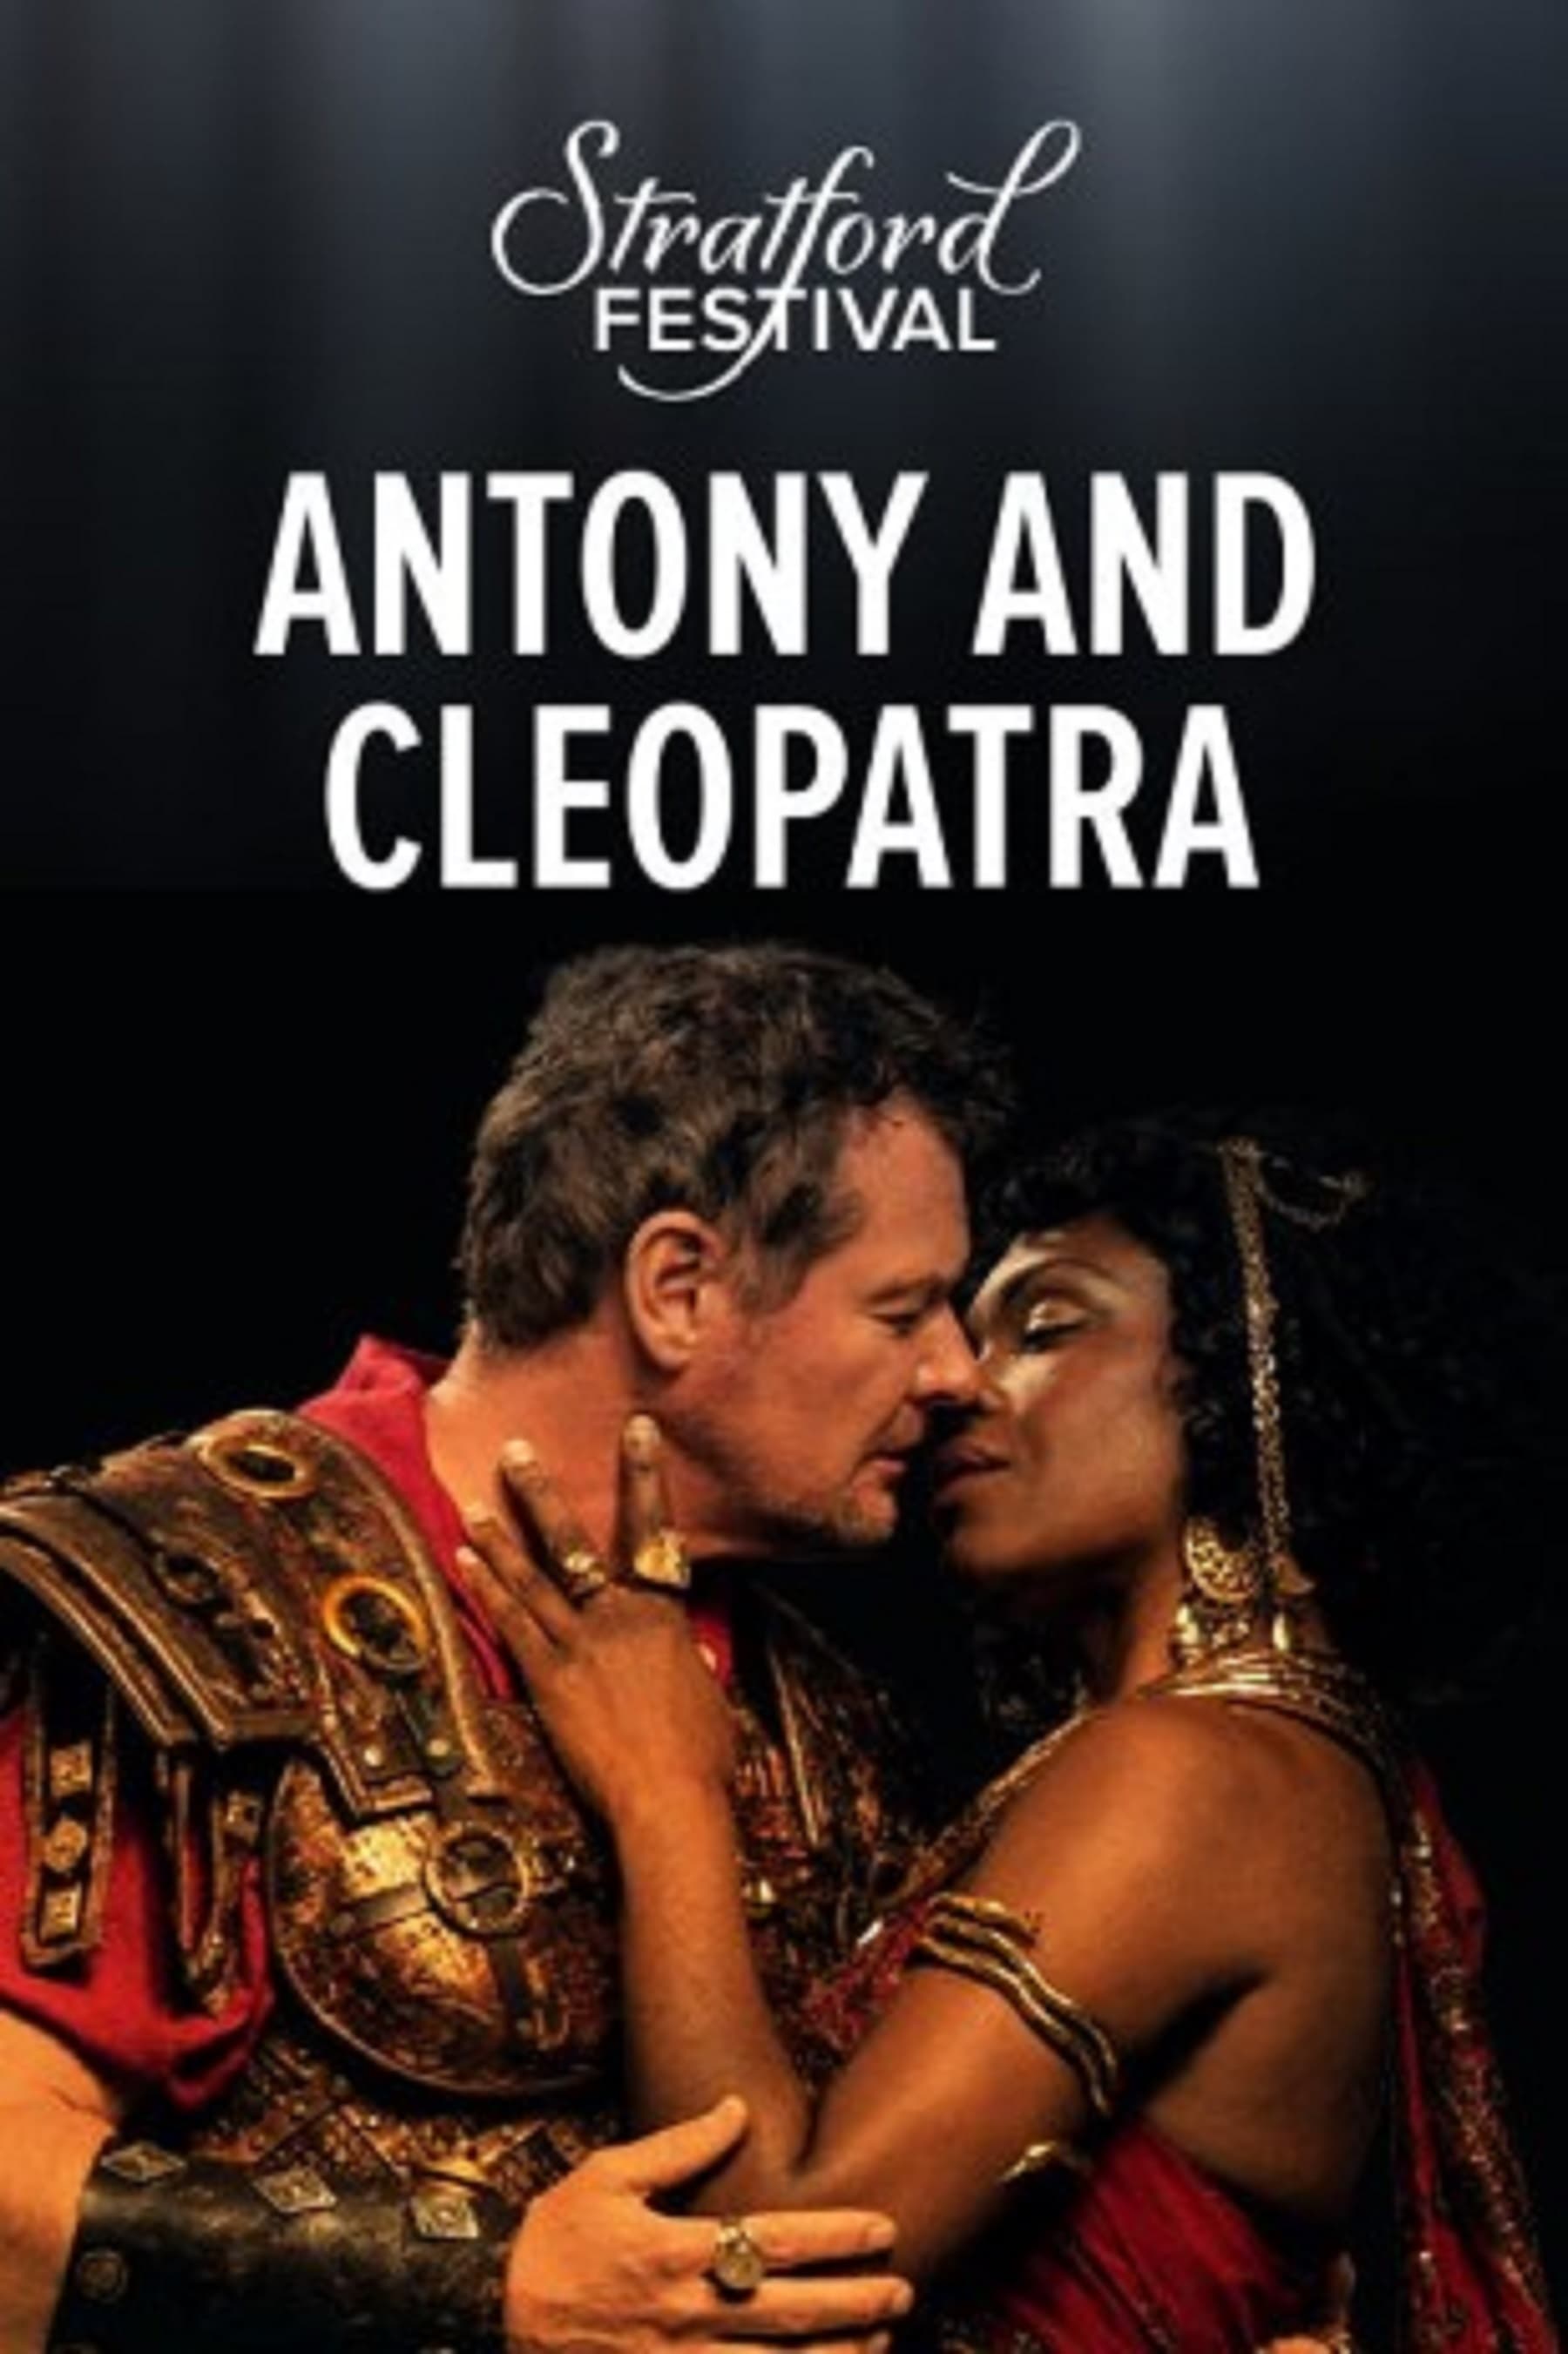 Stratford Festival: Antony and Cleopratra (2015)